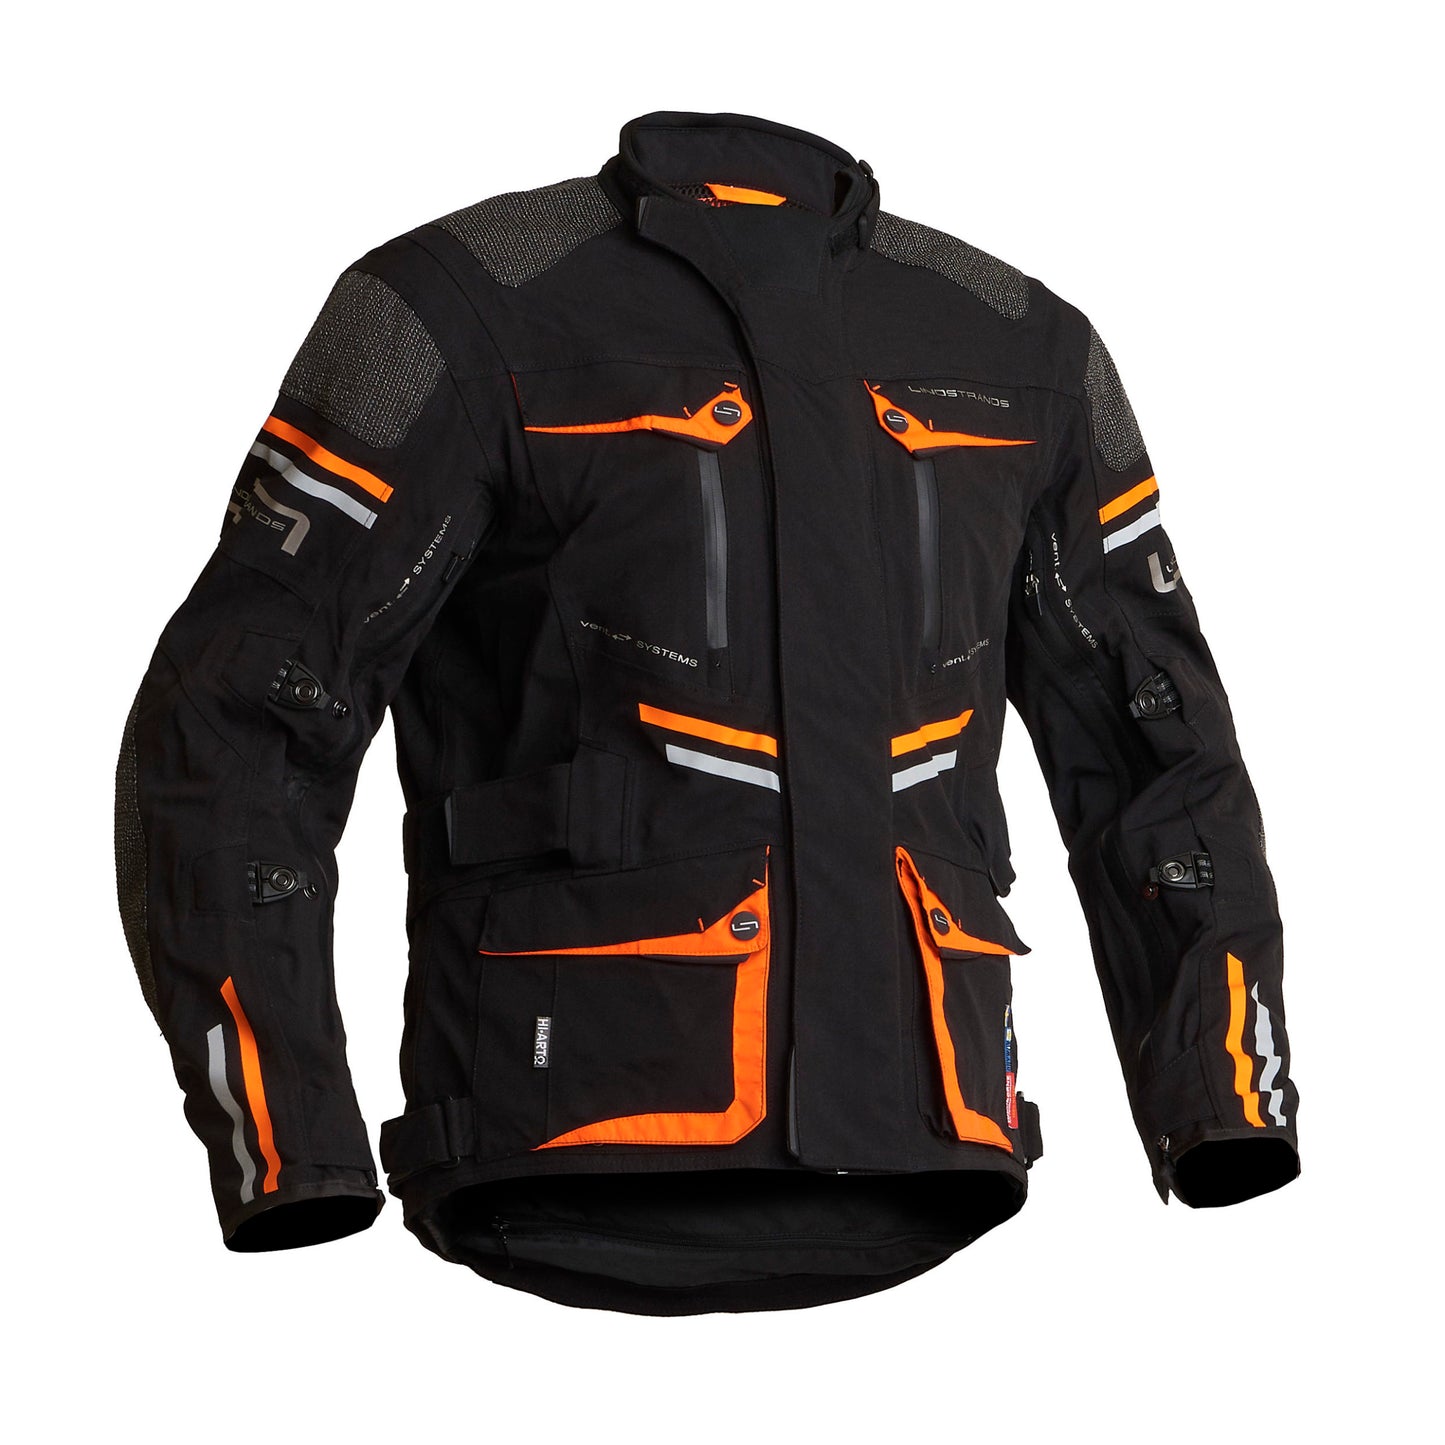 Lindstrands Sunne Textile Jacket Black/Orange